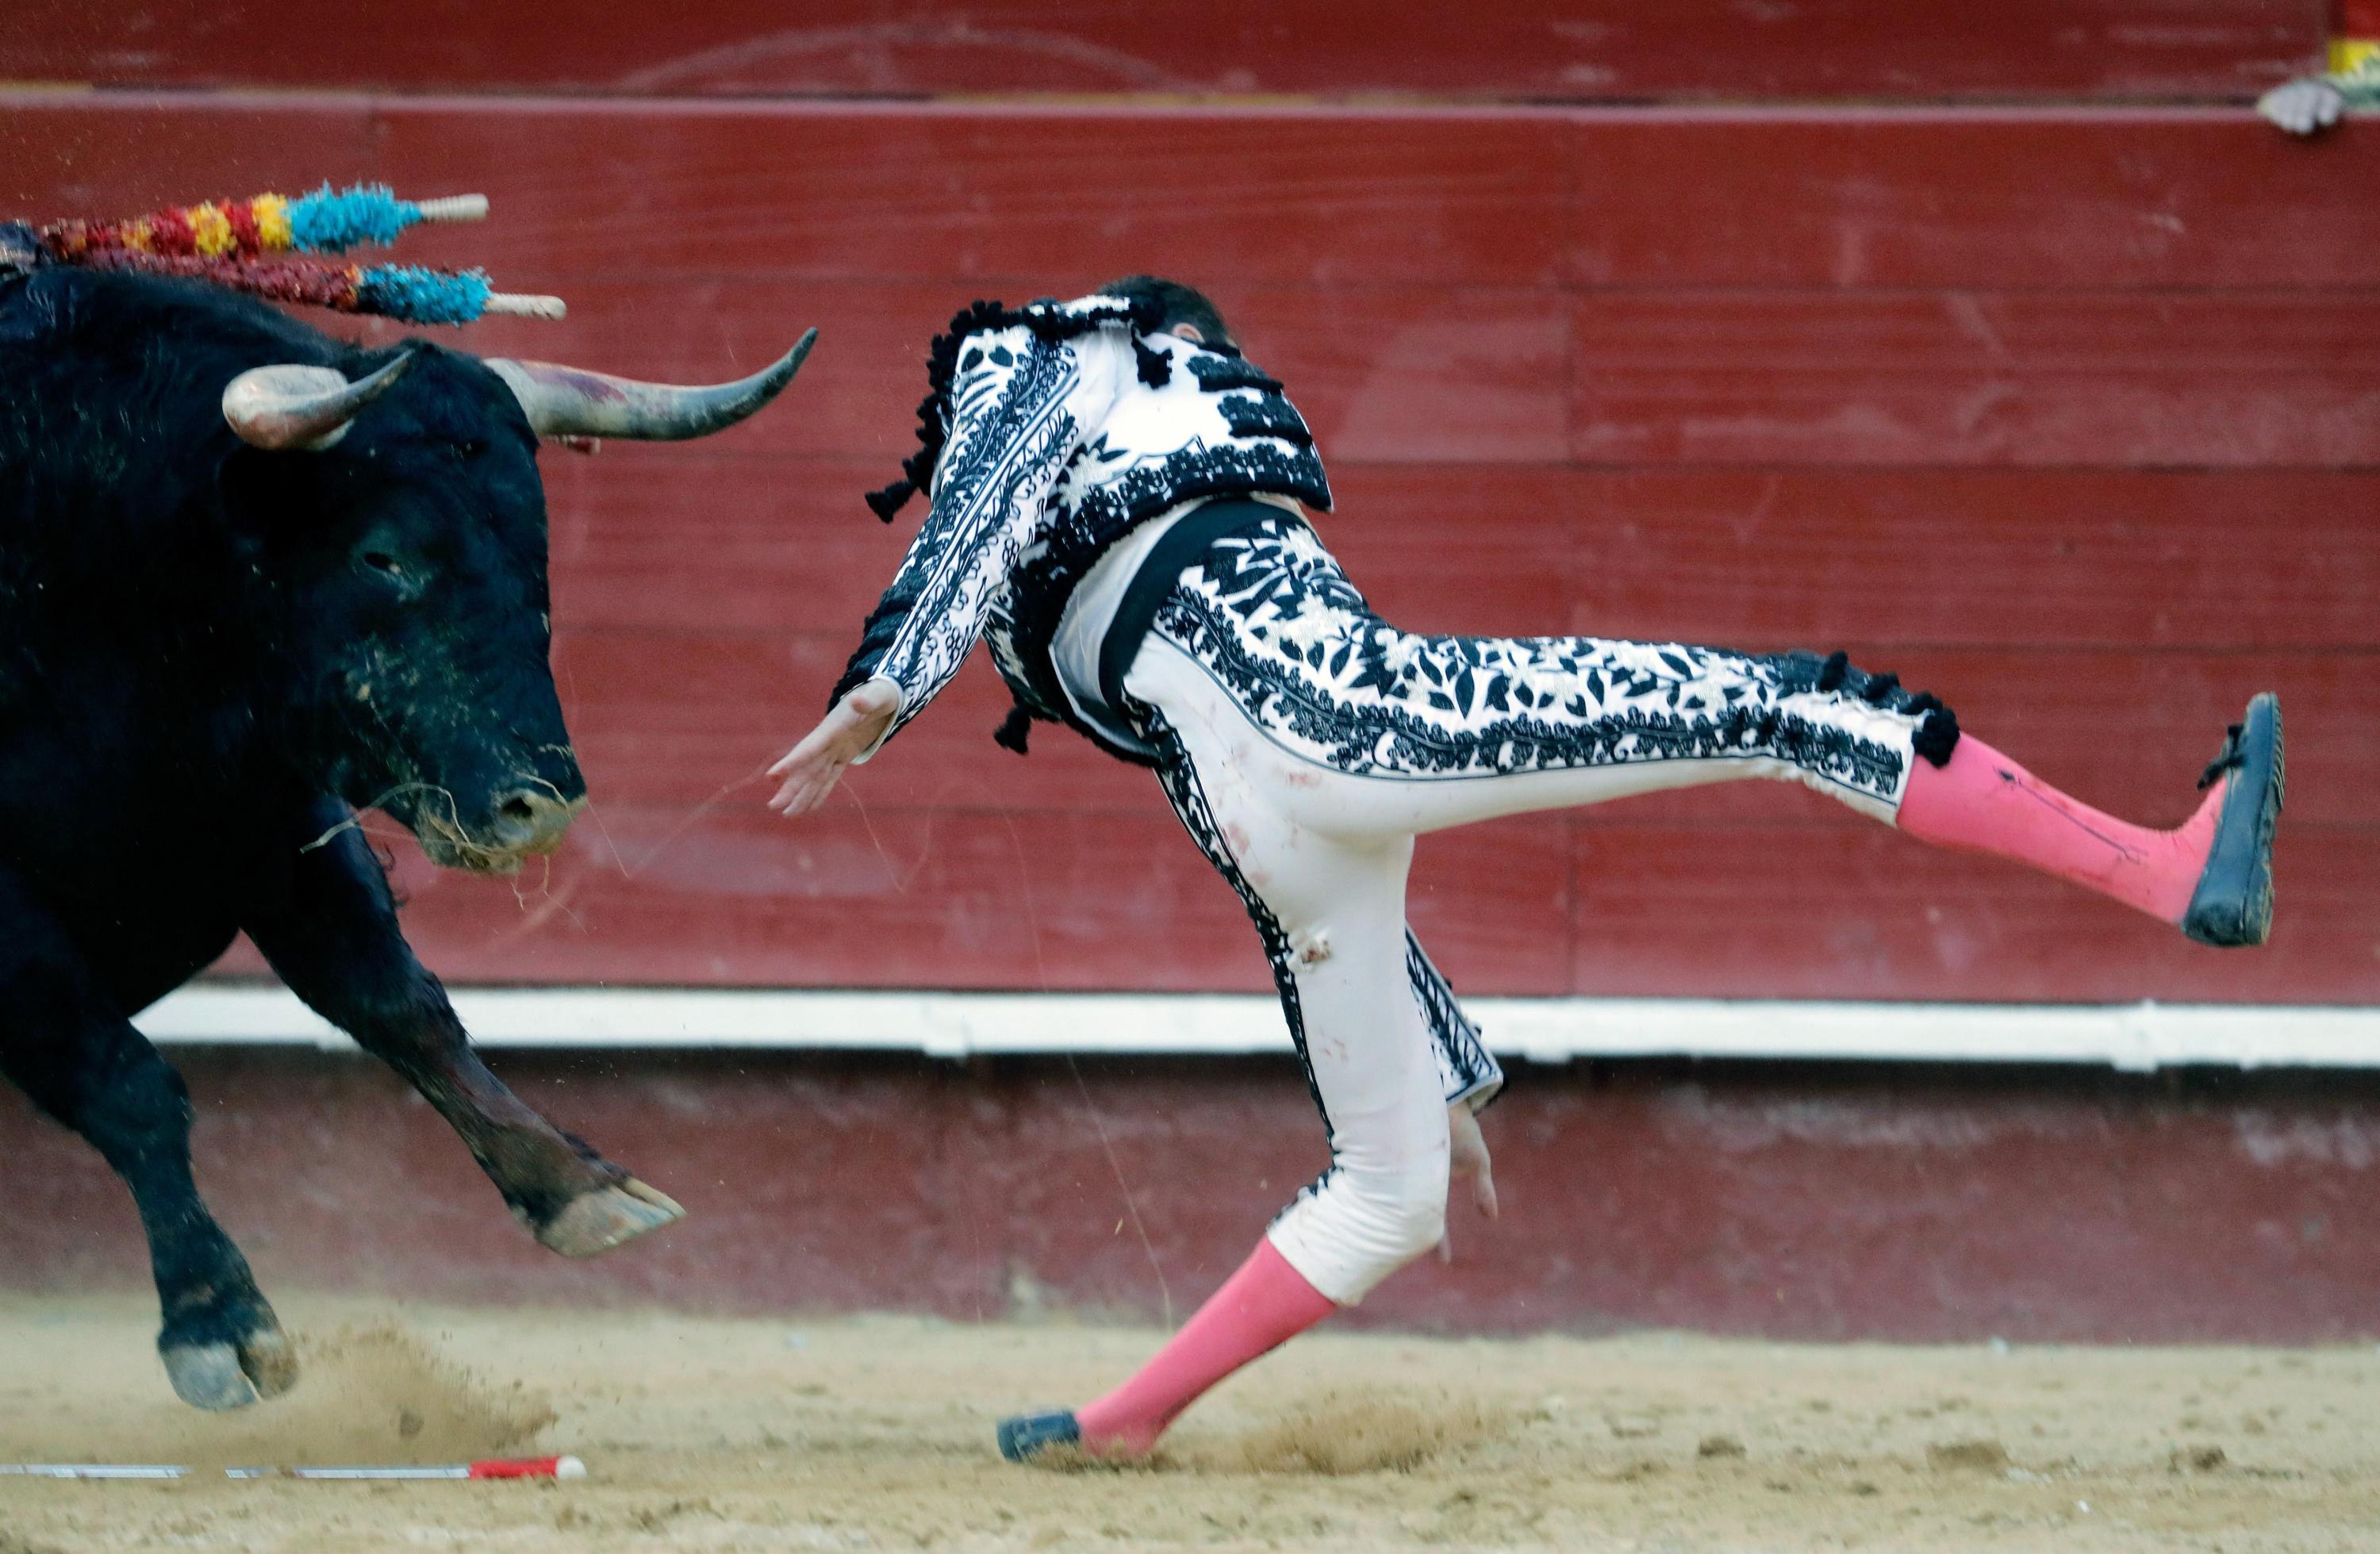 La impresionante cornada que hirió al torero Enrique Ponce en España. Foto: EFE